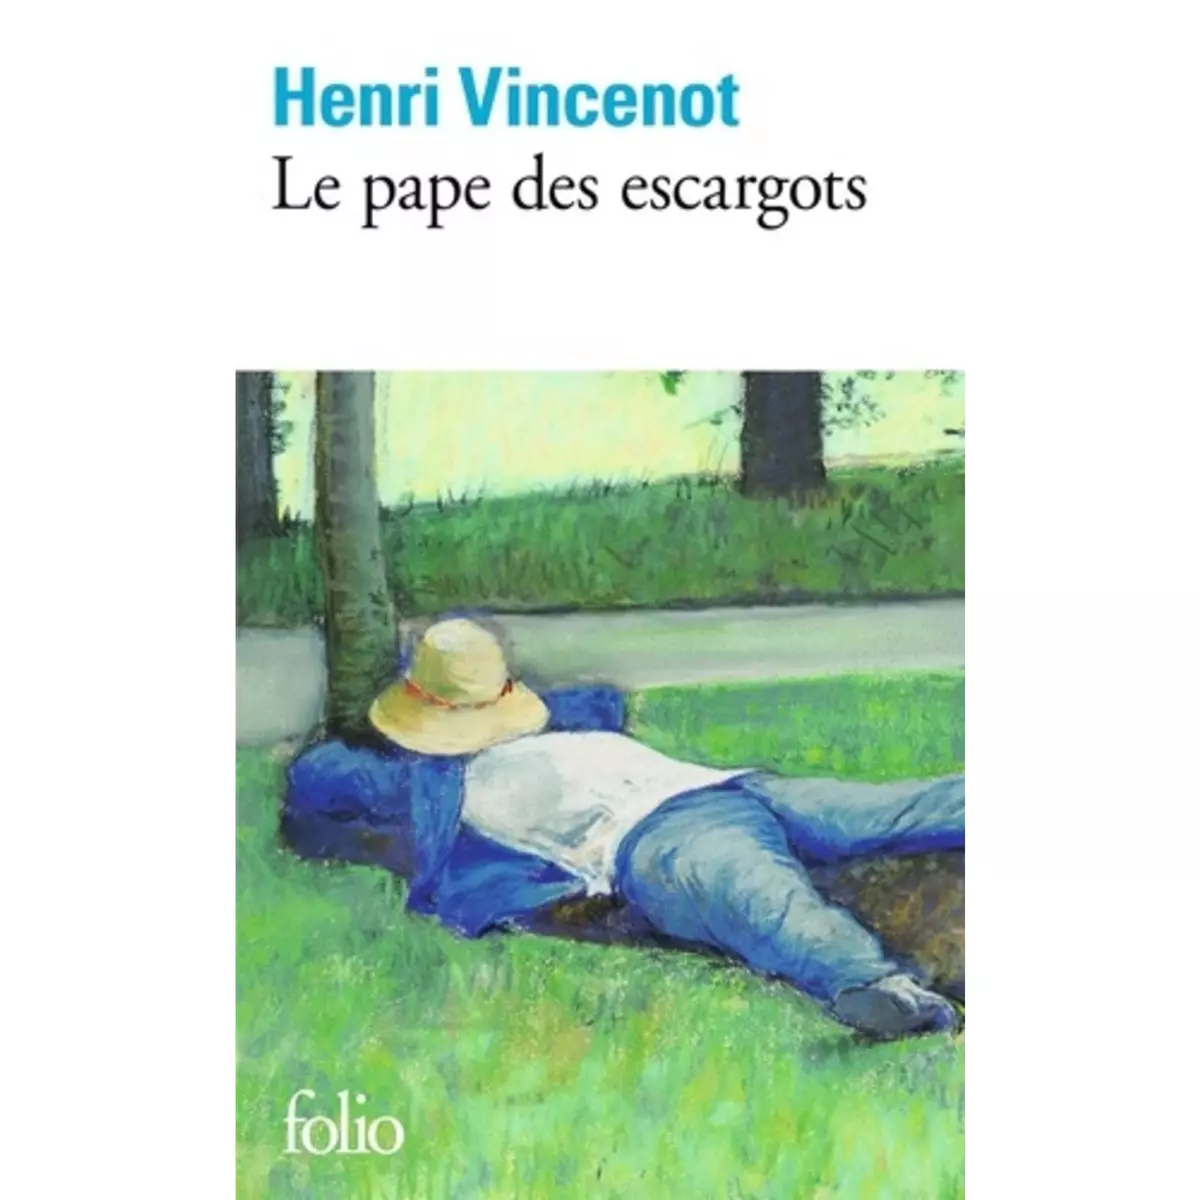  LE PAPE DES ESCARGOTS, Vincenot Henri